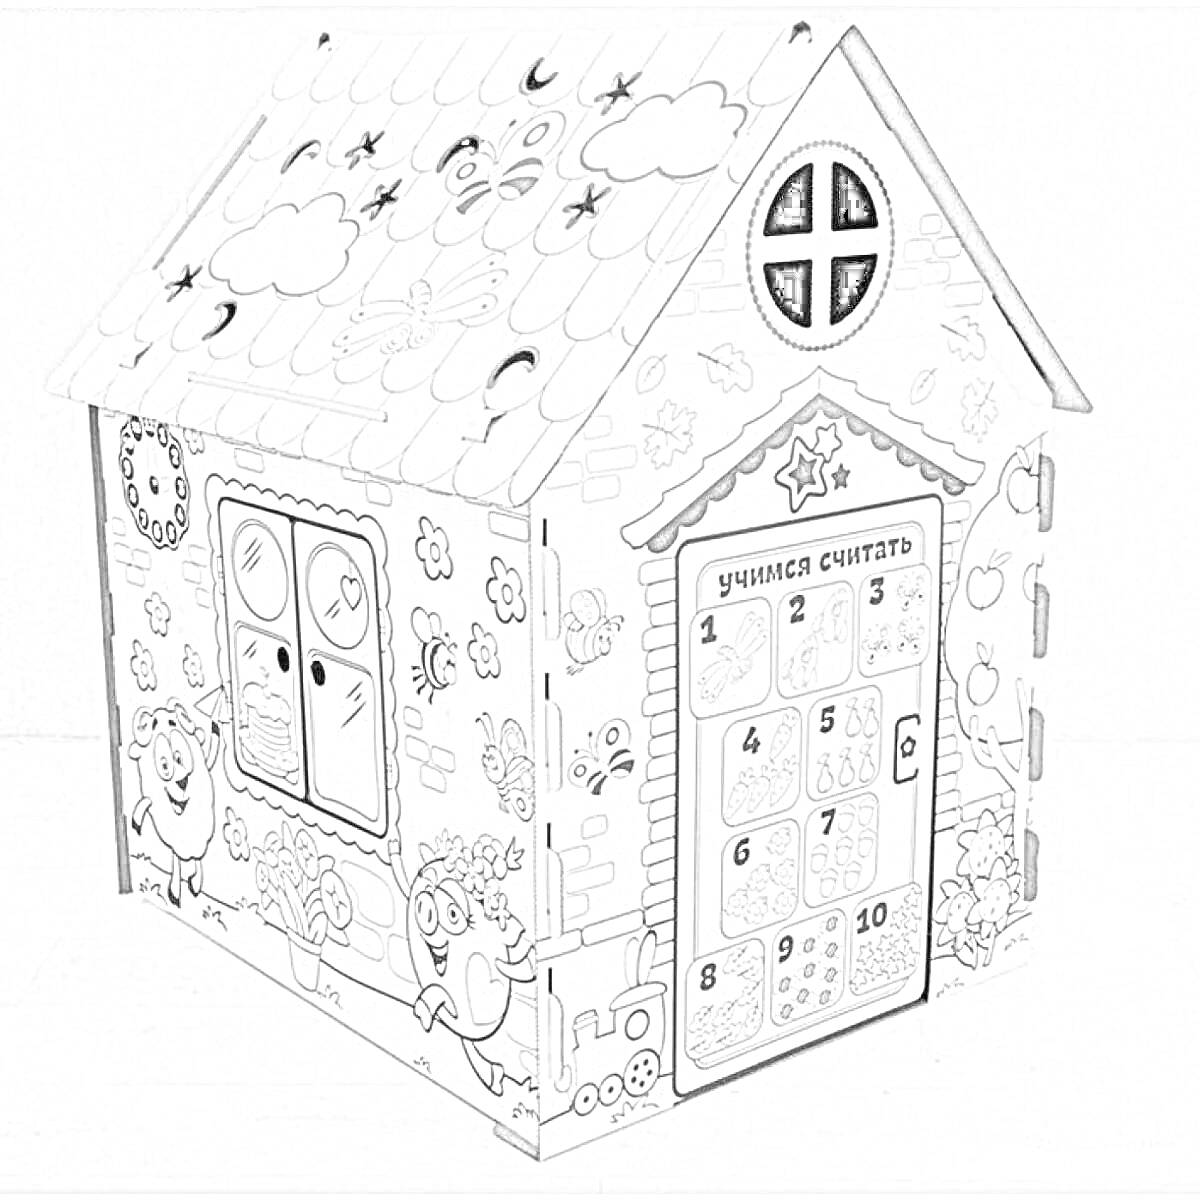 Раскраска Картонный домик для раскрашивания с рисунками облаков, звезд, растений, часов, двух персонажей, песочных часов, солнышка и обучающей таблицей на двери